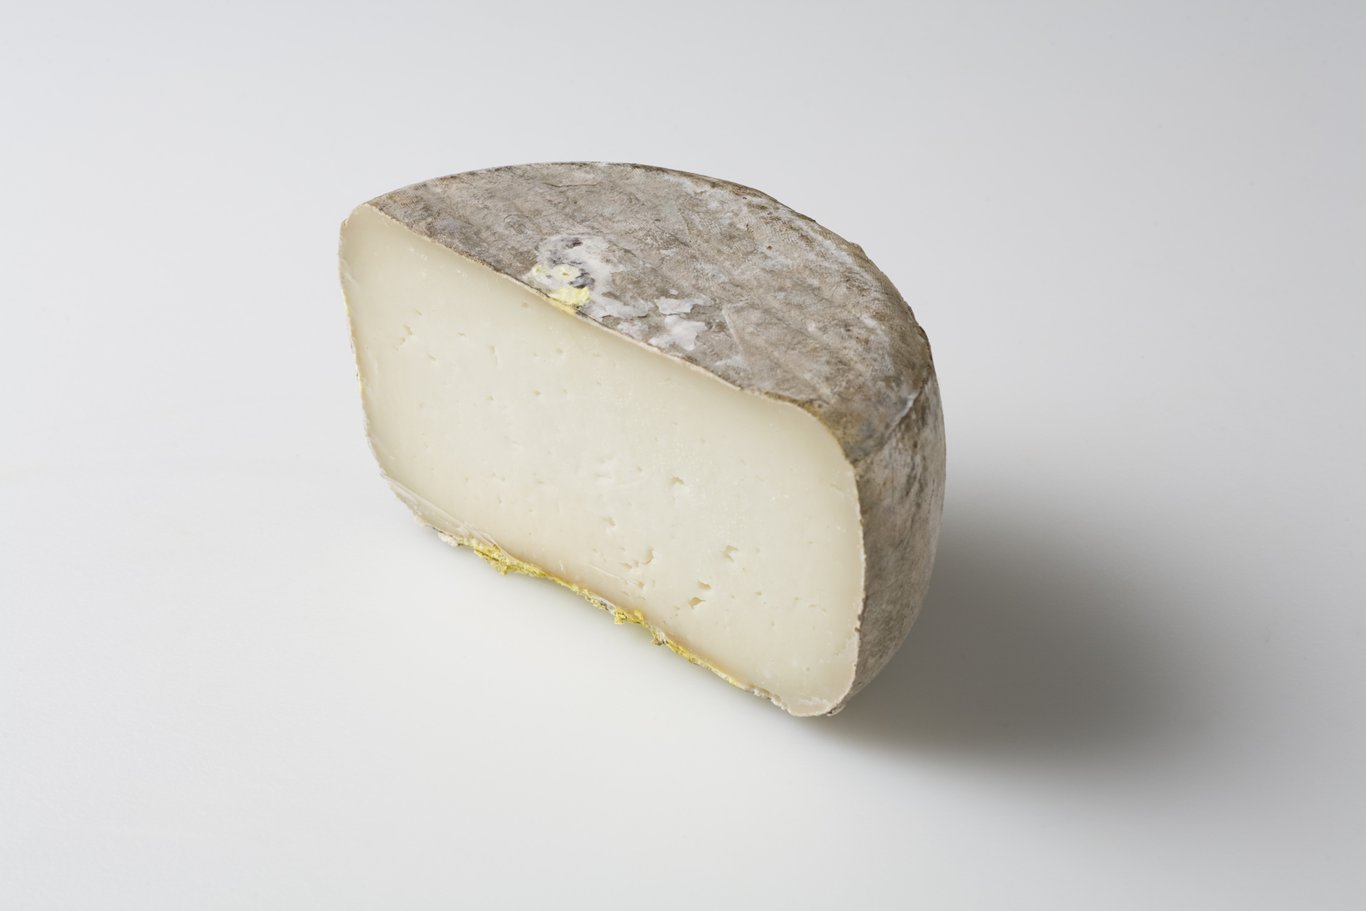 Garrotxa cheese